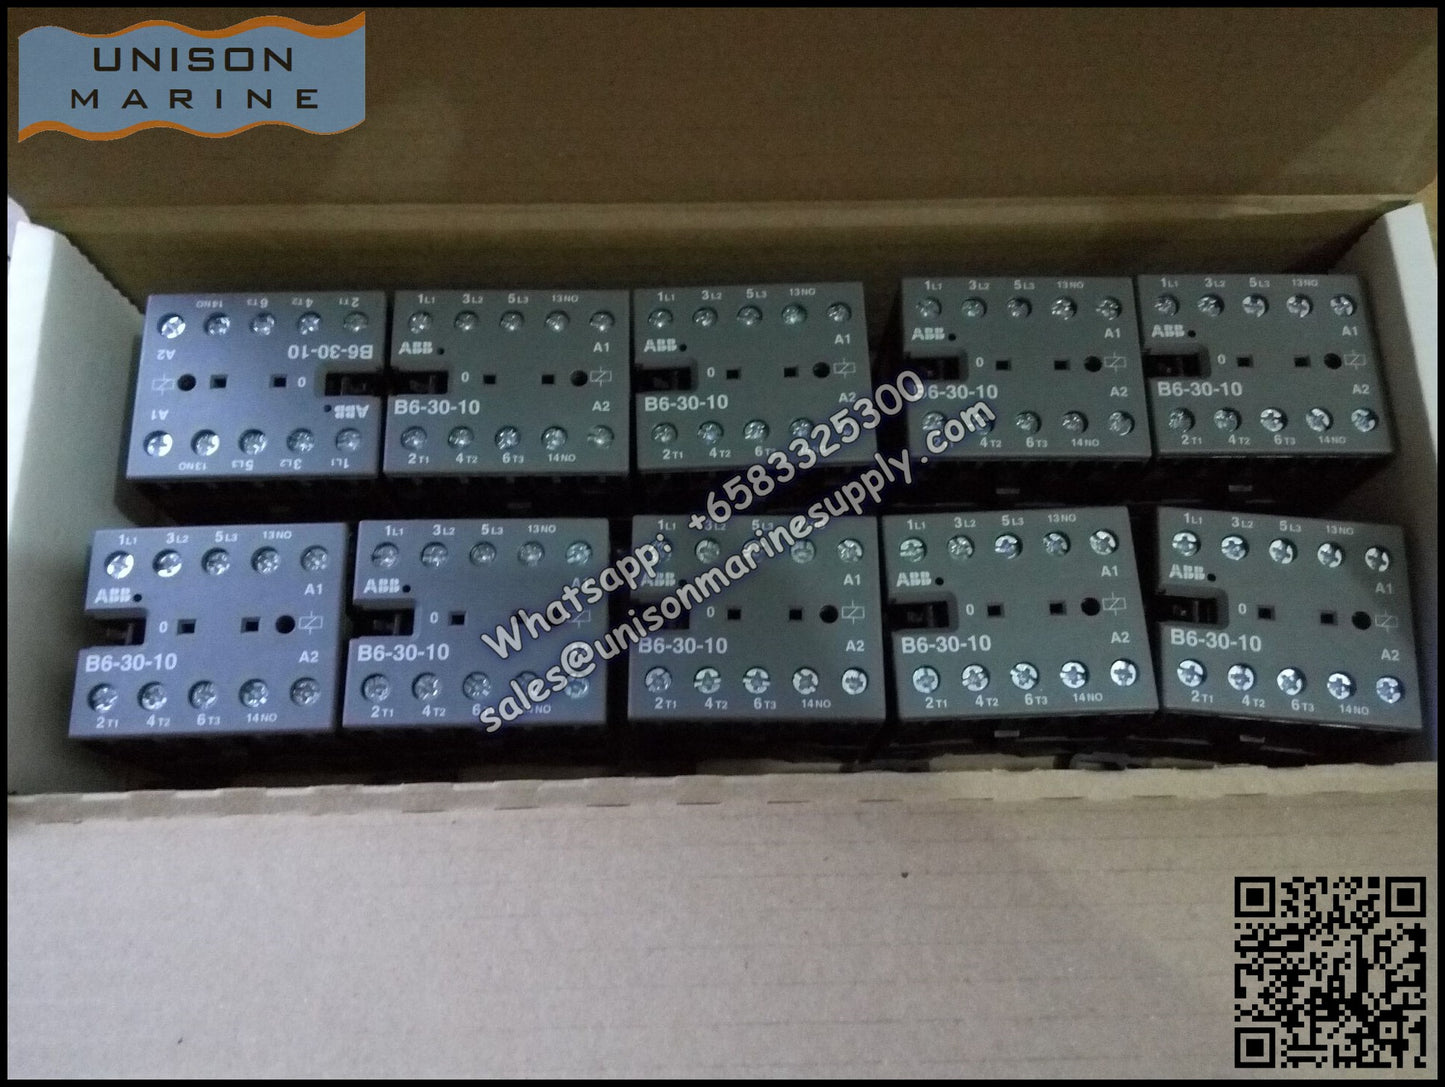 ABB B6, B7 series mini contactors: B6-30-10